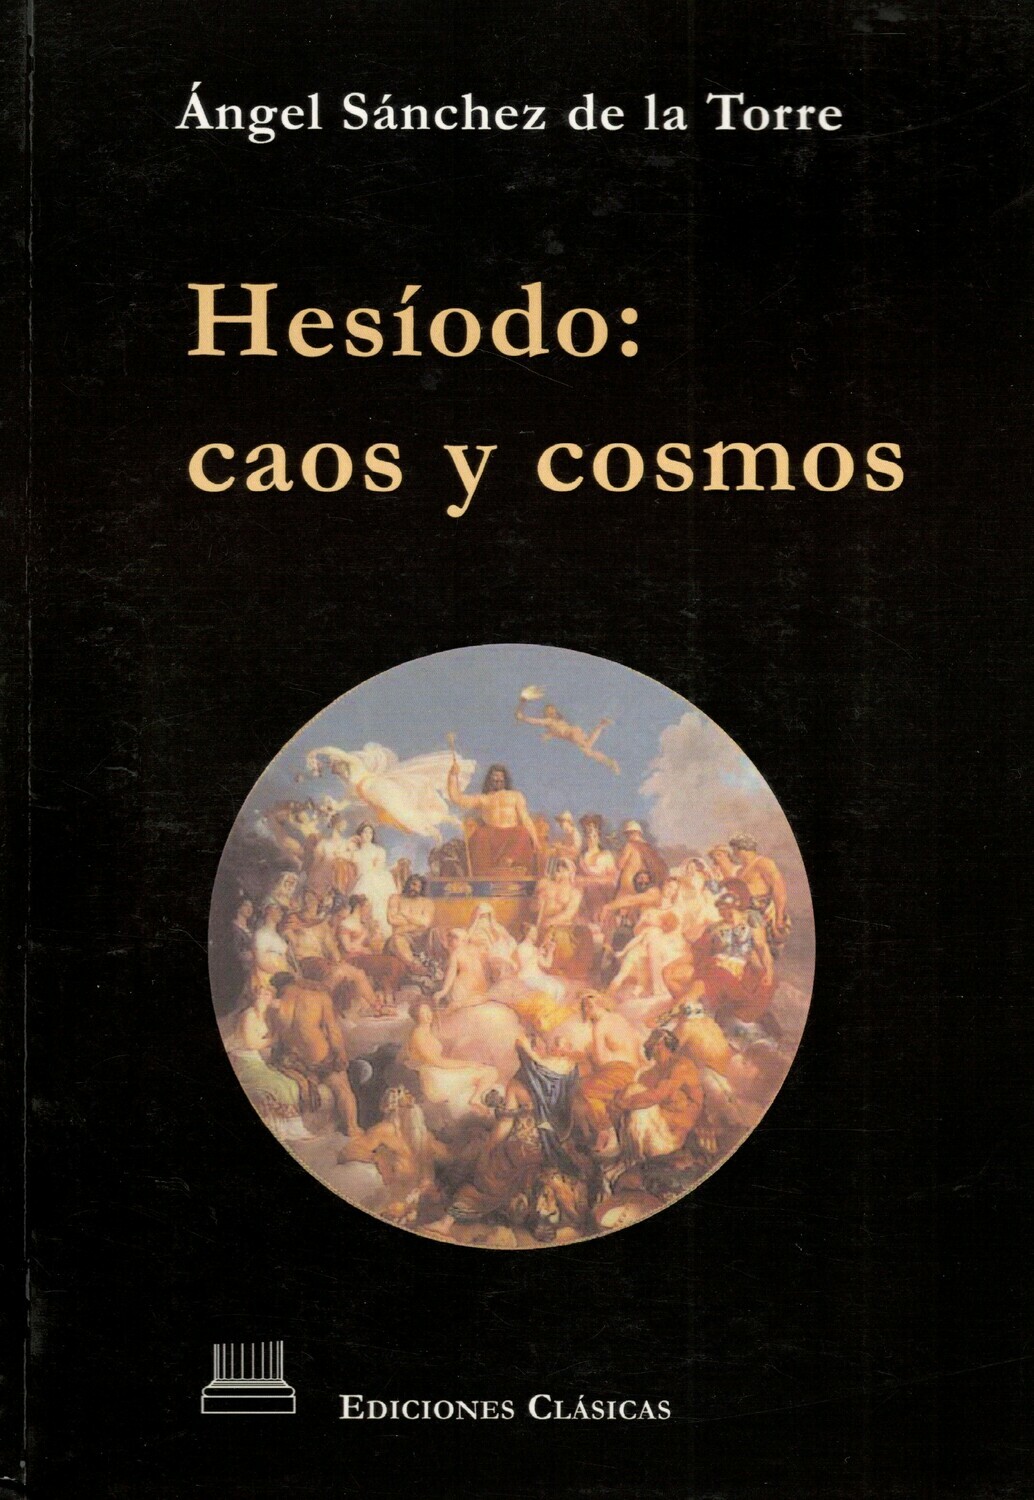 HESIODO CAOS Y COSMOS